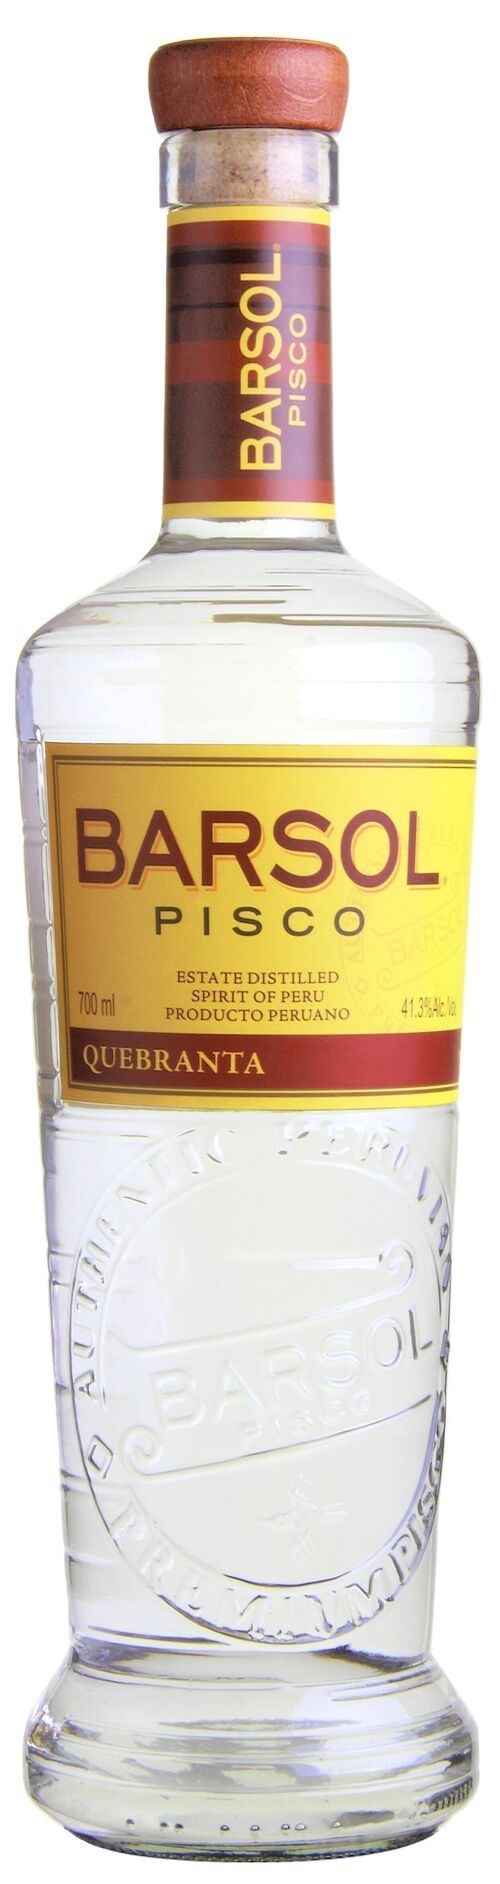 Barsol - Pisco Quebranta